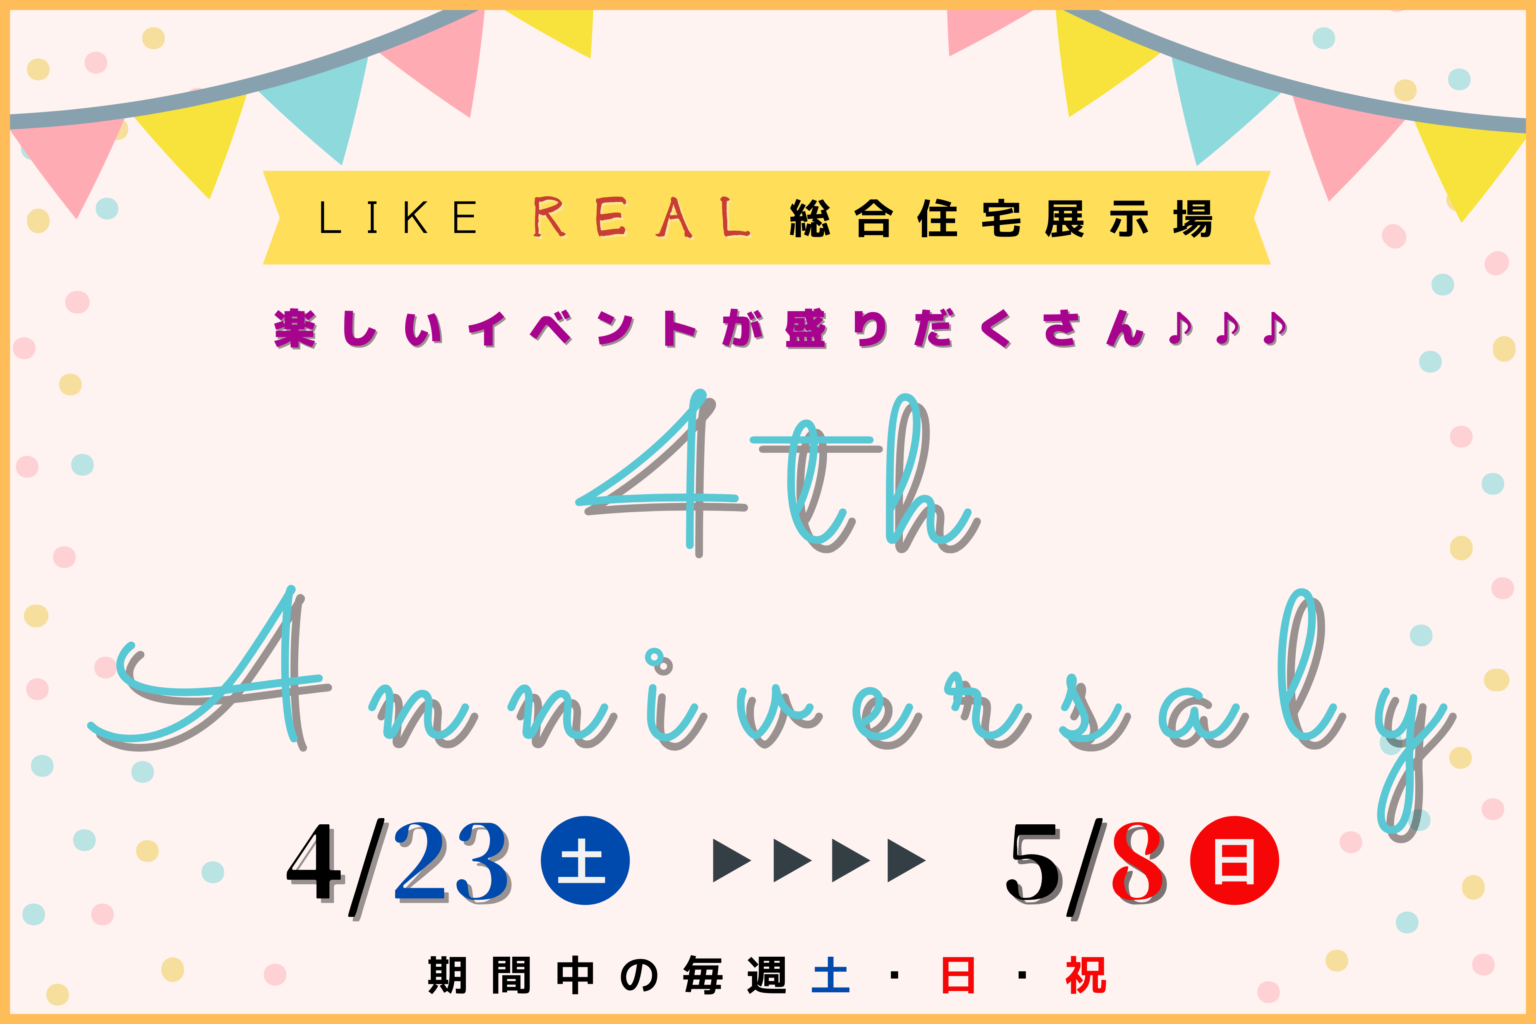 【クレバリーホーム】LIKE REAL 総合住宅展示場 4周年記念イベント開催